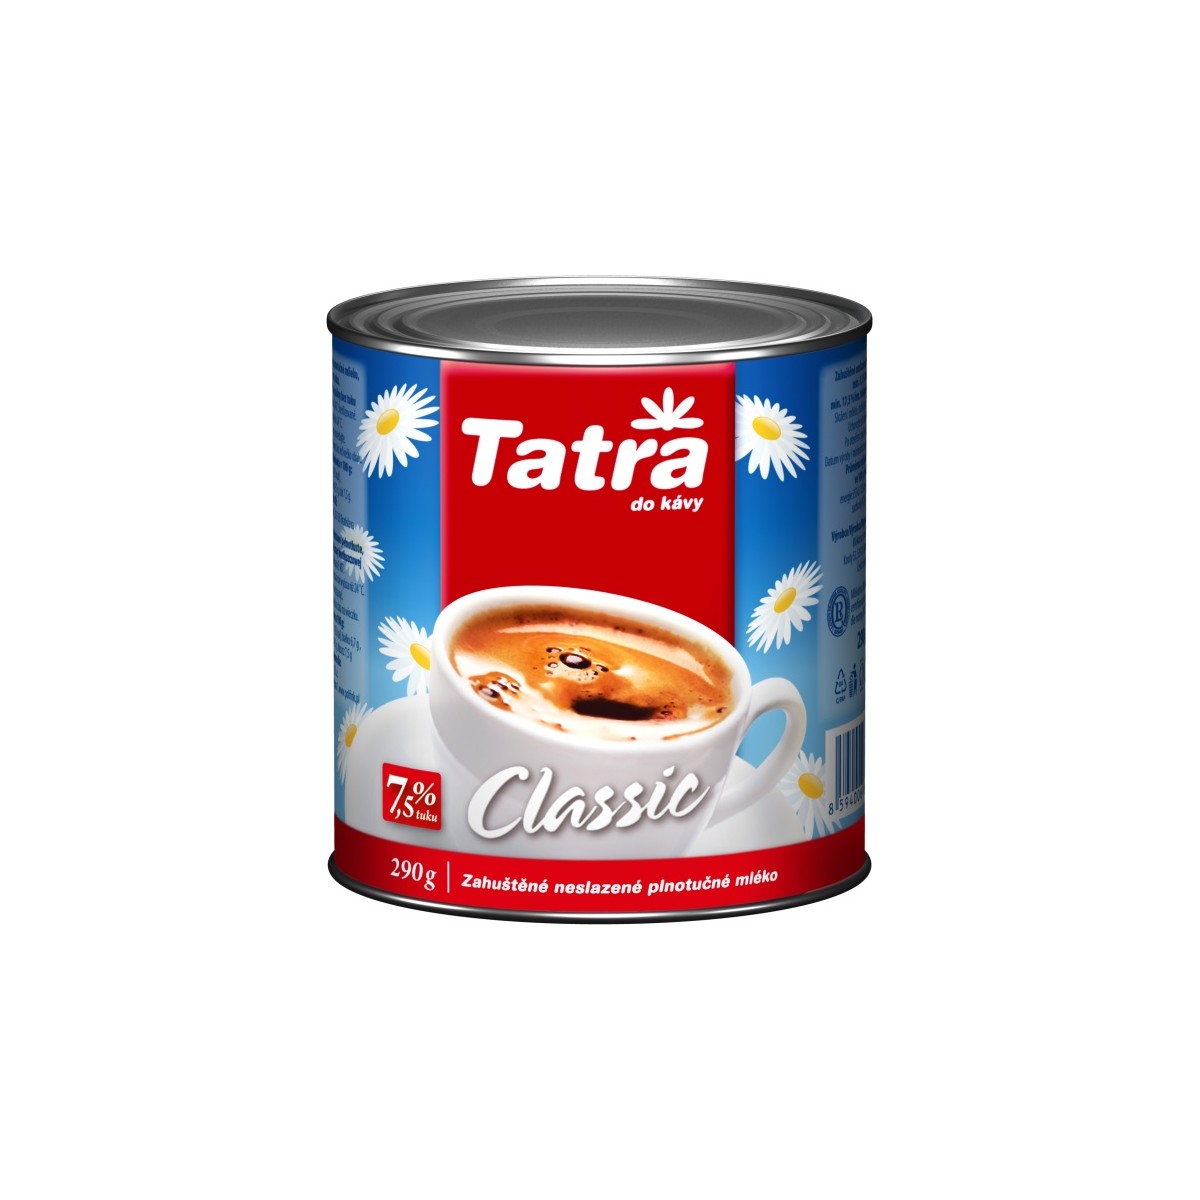 Tatra Classic zahuštěné mléko neslazené 7,5% 290g - plech